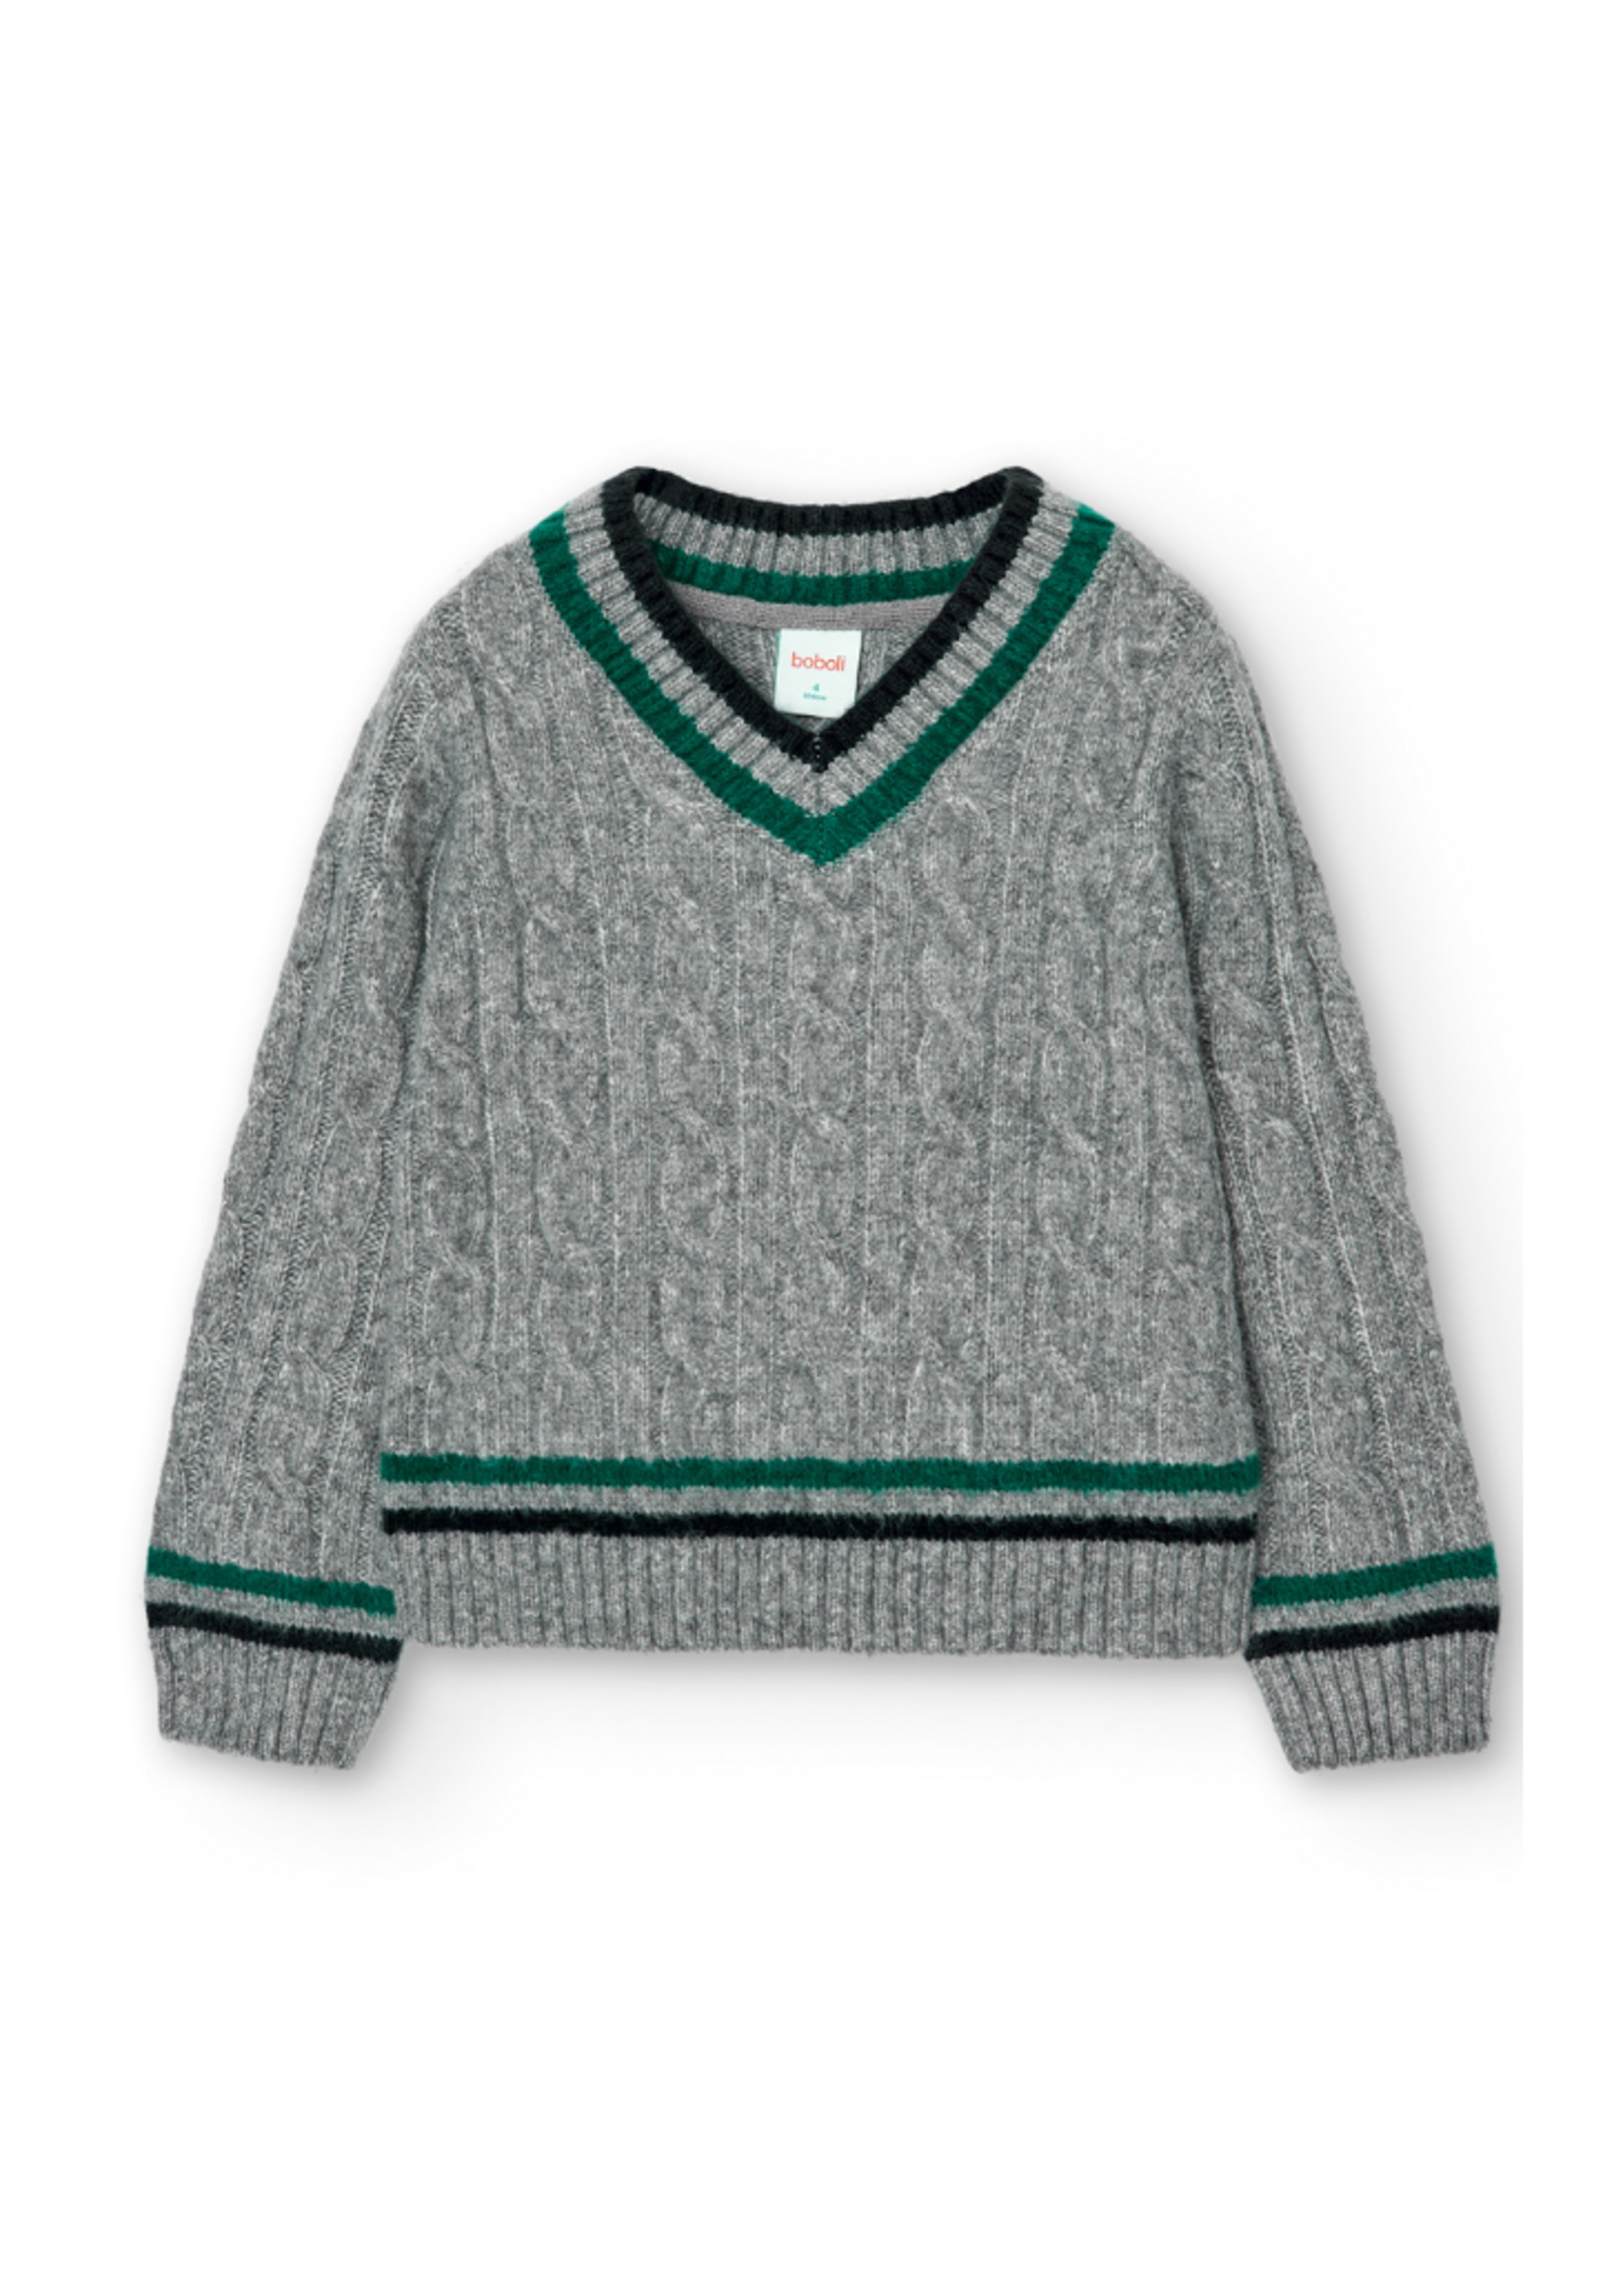 Boboli Brody Sweater